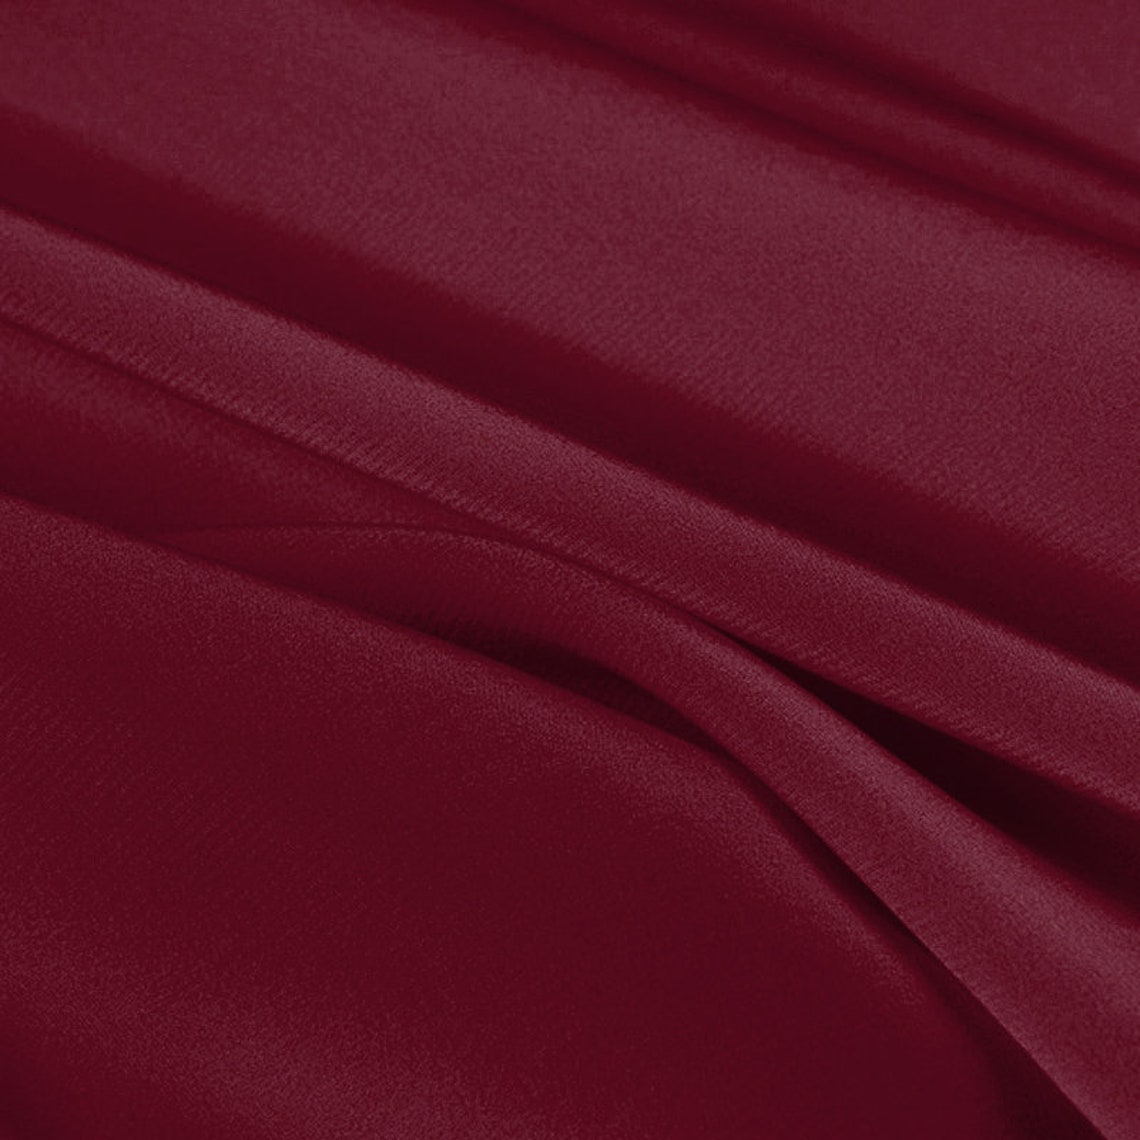 Pure Silk Red Wine Color Fabric 100% Silk Crepe De Chine - Etsy